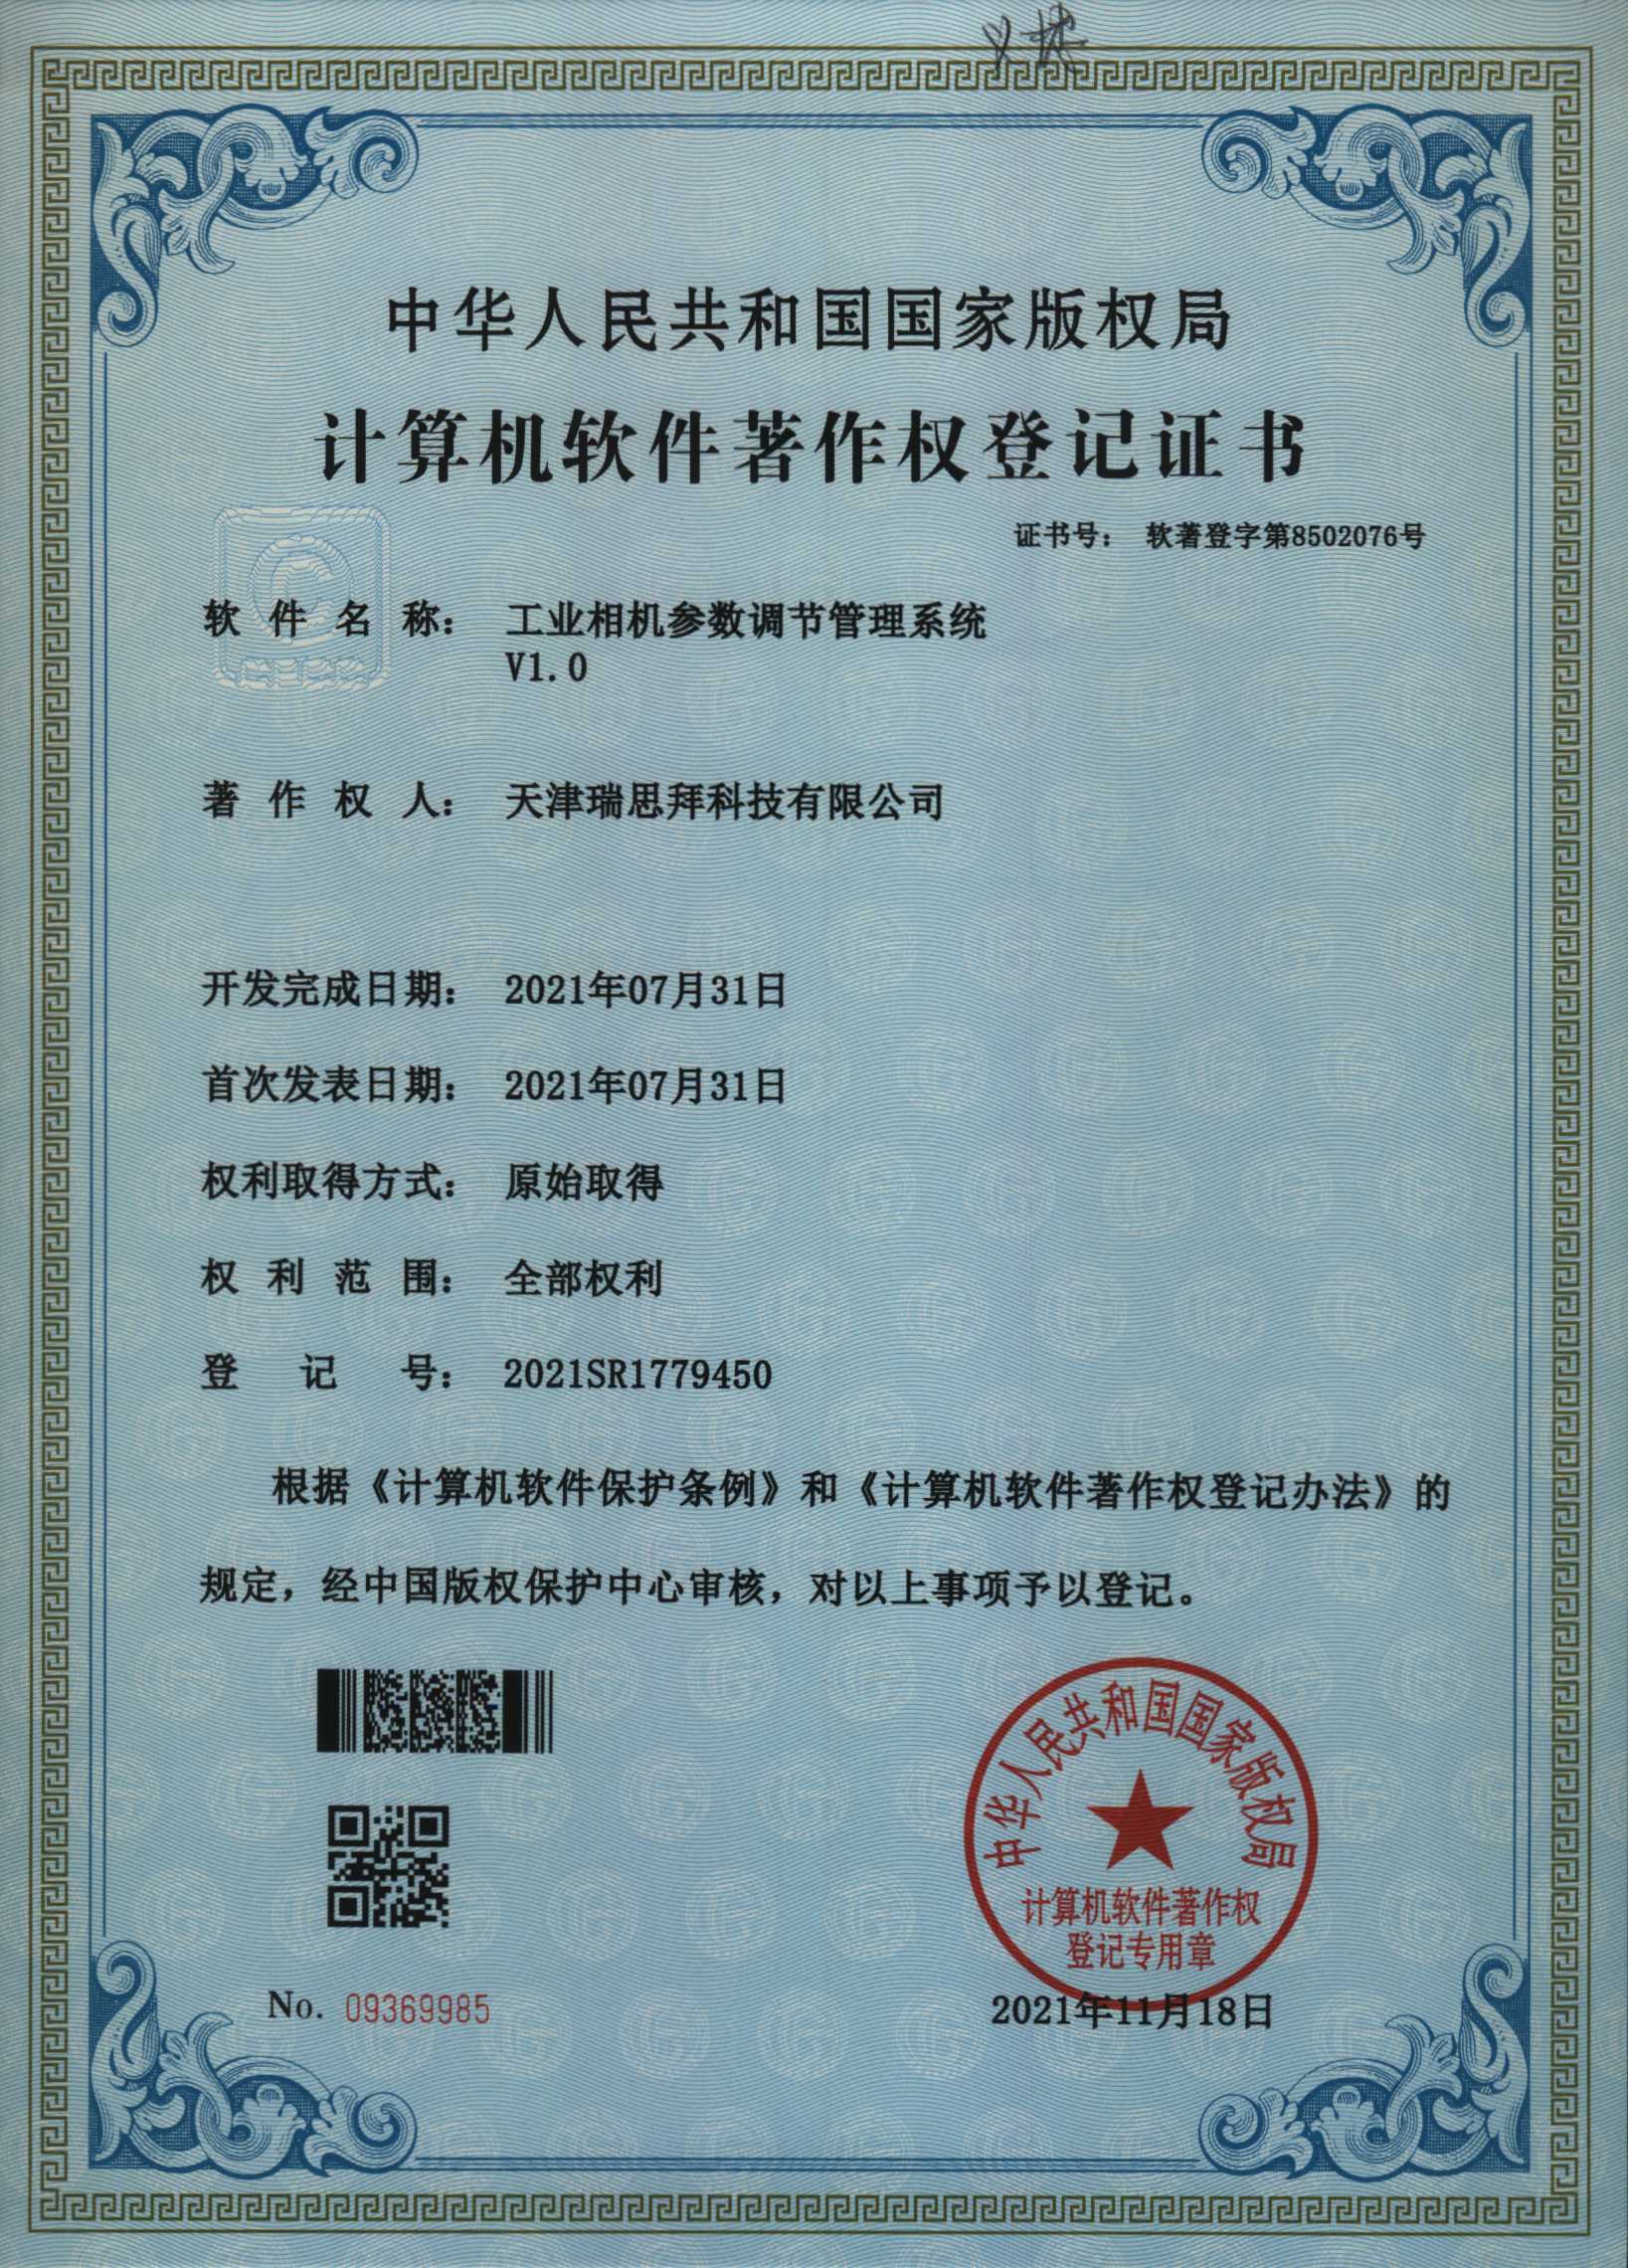 天津瑞思拜软件著作权登记证书8